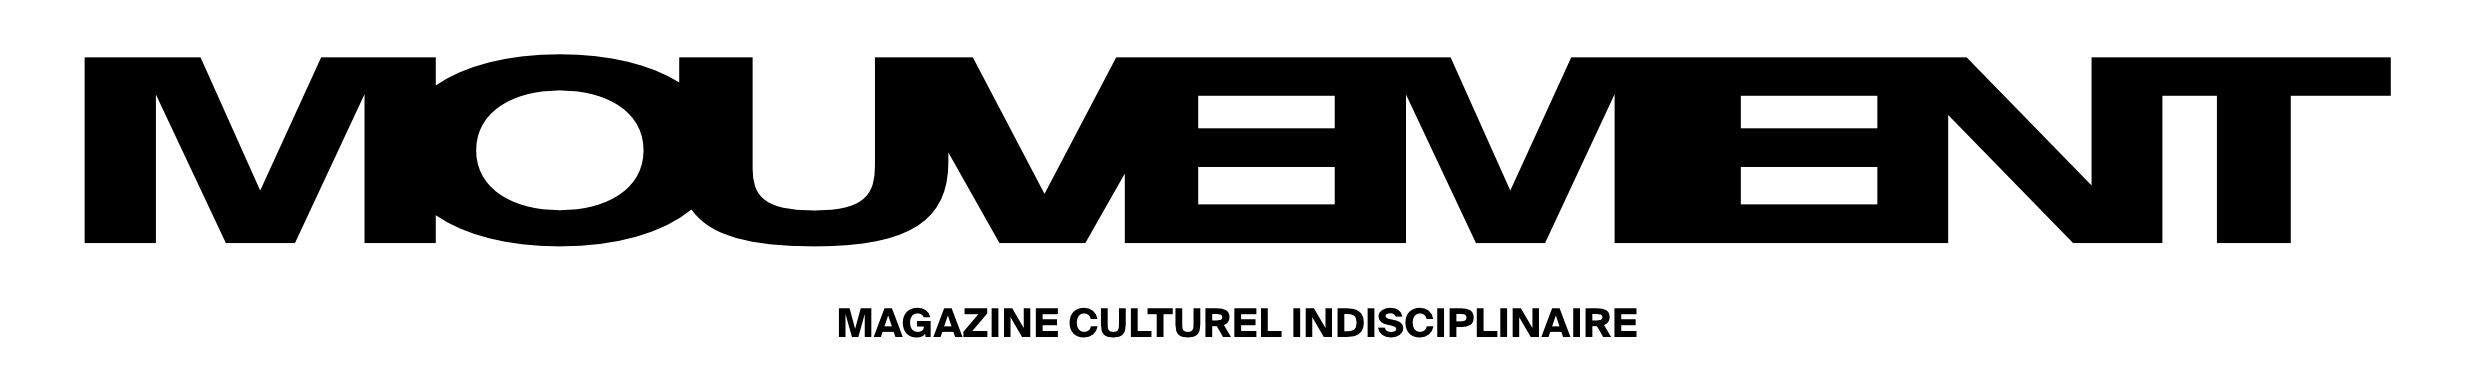 Logo du magazine Mouvement contenant un lien redirigeant sur leur site internet.